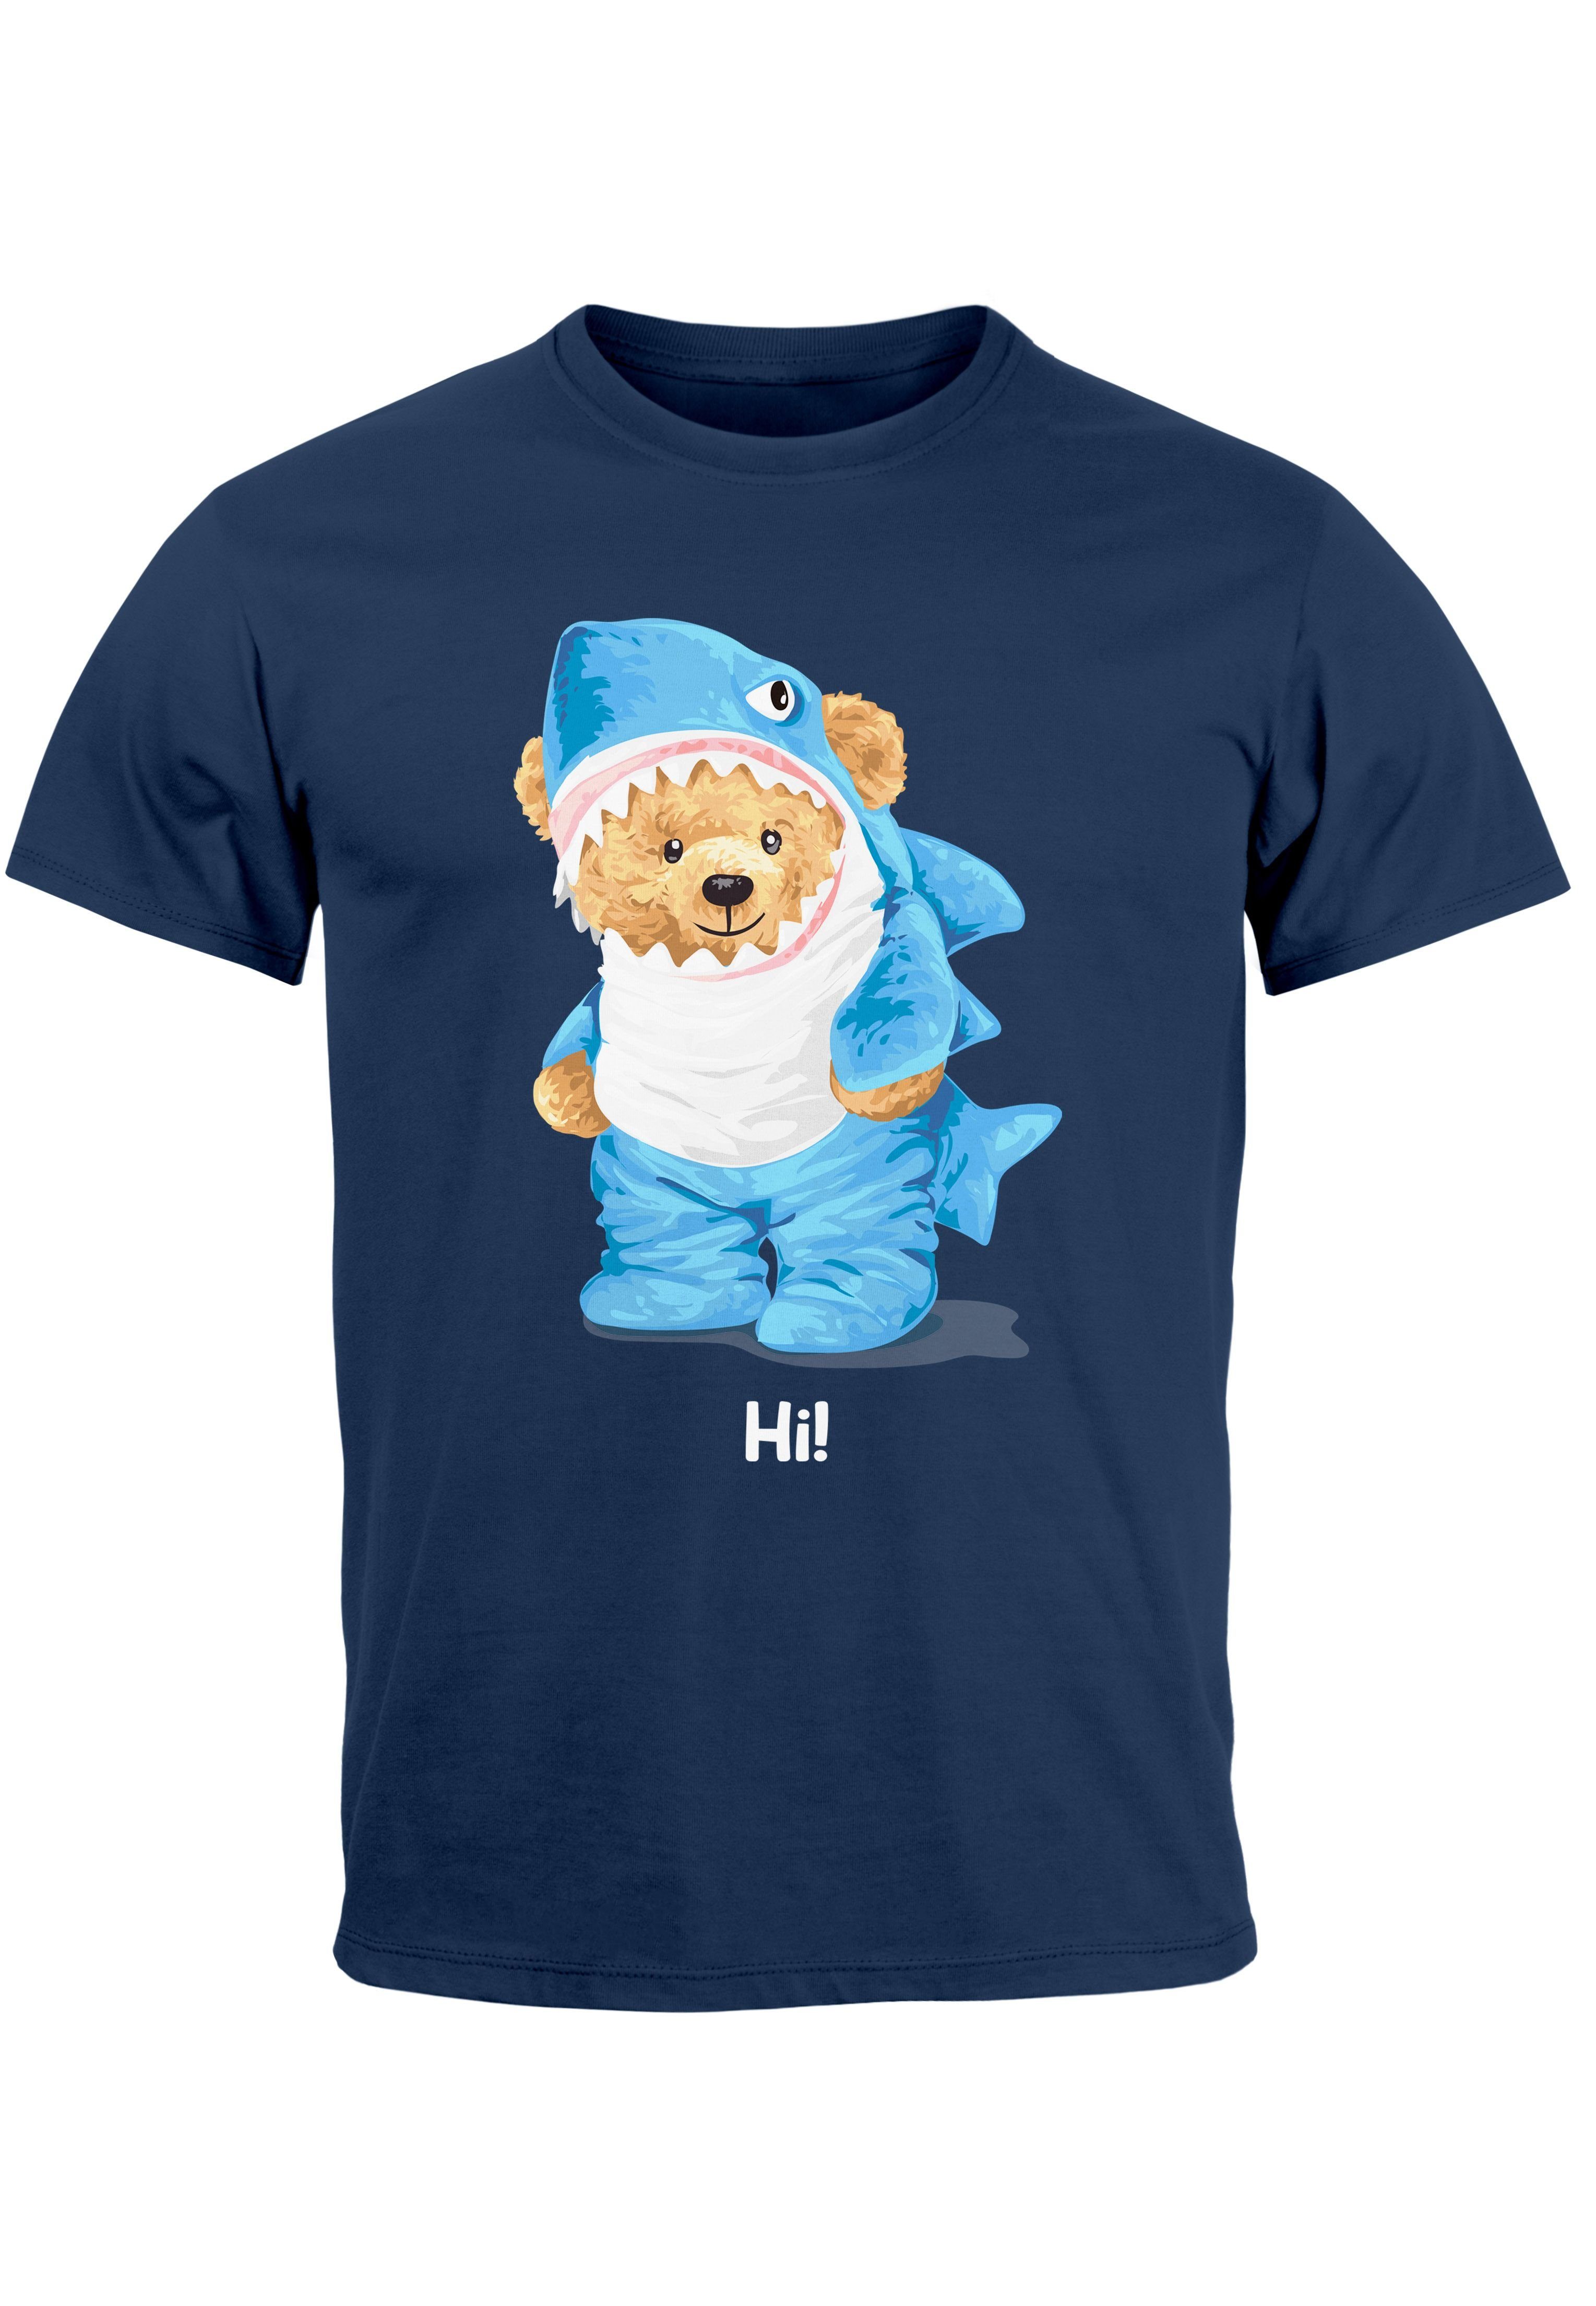 Neverless Print-Shirt Herren T-Shirt Hai Aufdruck Printshirt navy Parodie mit Bär Fashi Teddy Print Witz Hi